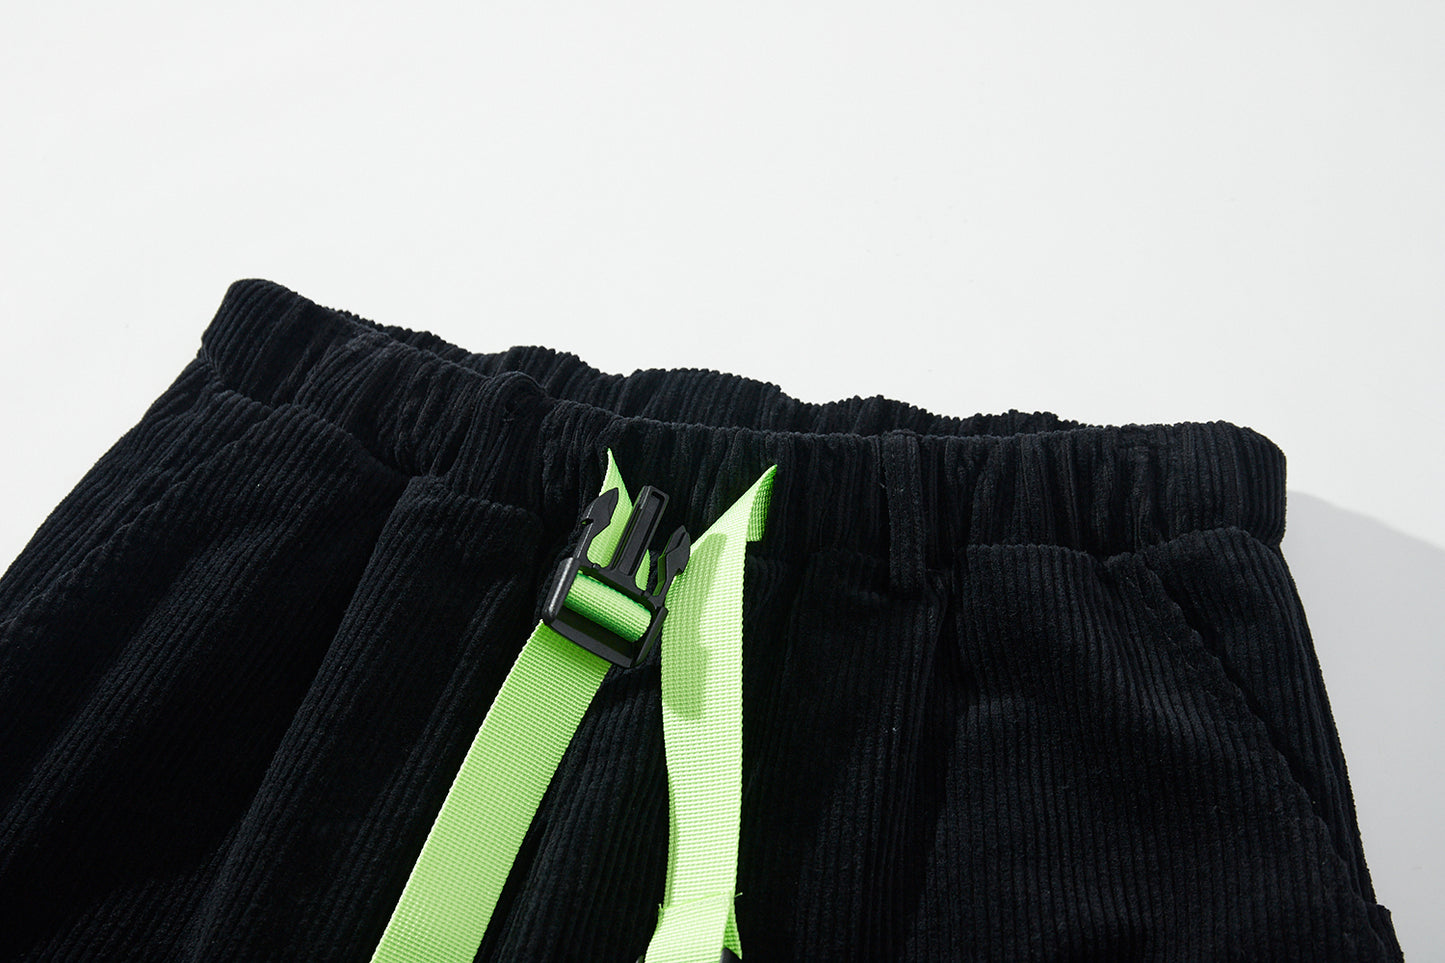 Pants Velvet Series model 3, black